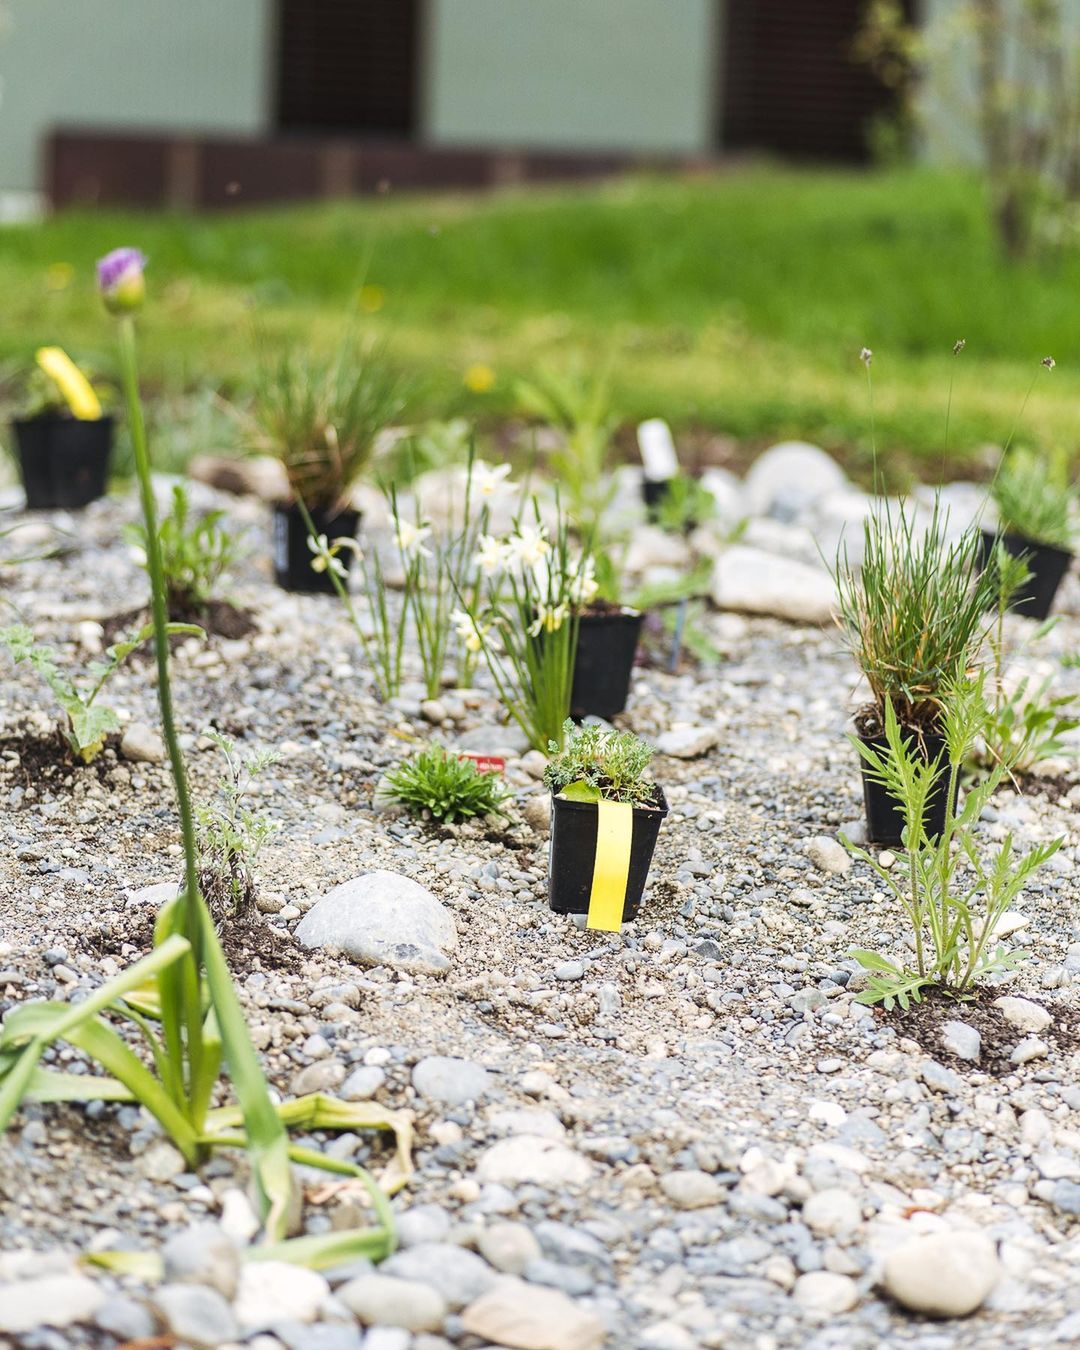 Diese Woche konnten wir das Kies/Staudenbeet fertig machen :) wir sind gespannt, wie es in ein paar Wochen aussehen wird! 
.
Wir haben noch diese Pflanzen in die Lücken gepflanzt:
.
- Ästige Graslilie 
- Astlose Graslilie 
- Alpenmohn 
- ausdauernder Lauch 
- Gemeines Ochsenauge 
- Muskatellersalbei 
- Wiesensalbei
- Wirbeldost 
- Moorblaugras 
- Herzzittergras 
. 
#nachbarschaftsgarten #urbangardening #garten #gemeinschaftsgarten #zürichcity #seebach #urbanesgärtnern #städtischergarten #nachhaltigegärten #wildstauden #kiesbeet #präriegarten #kiesgarten